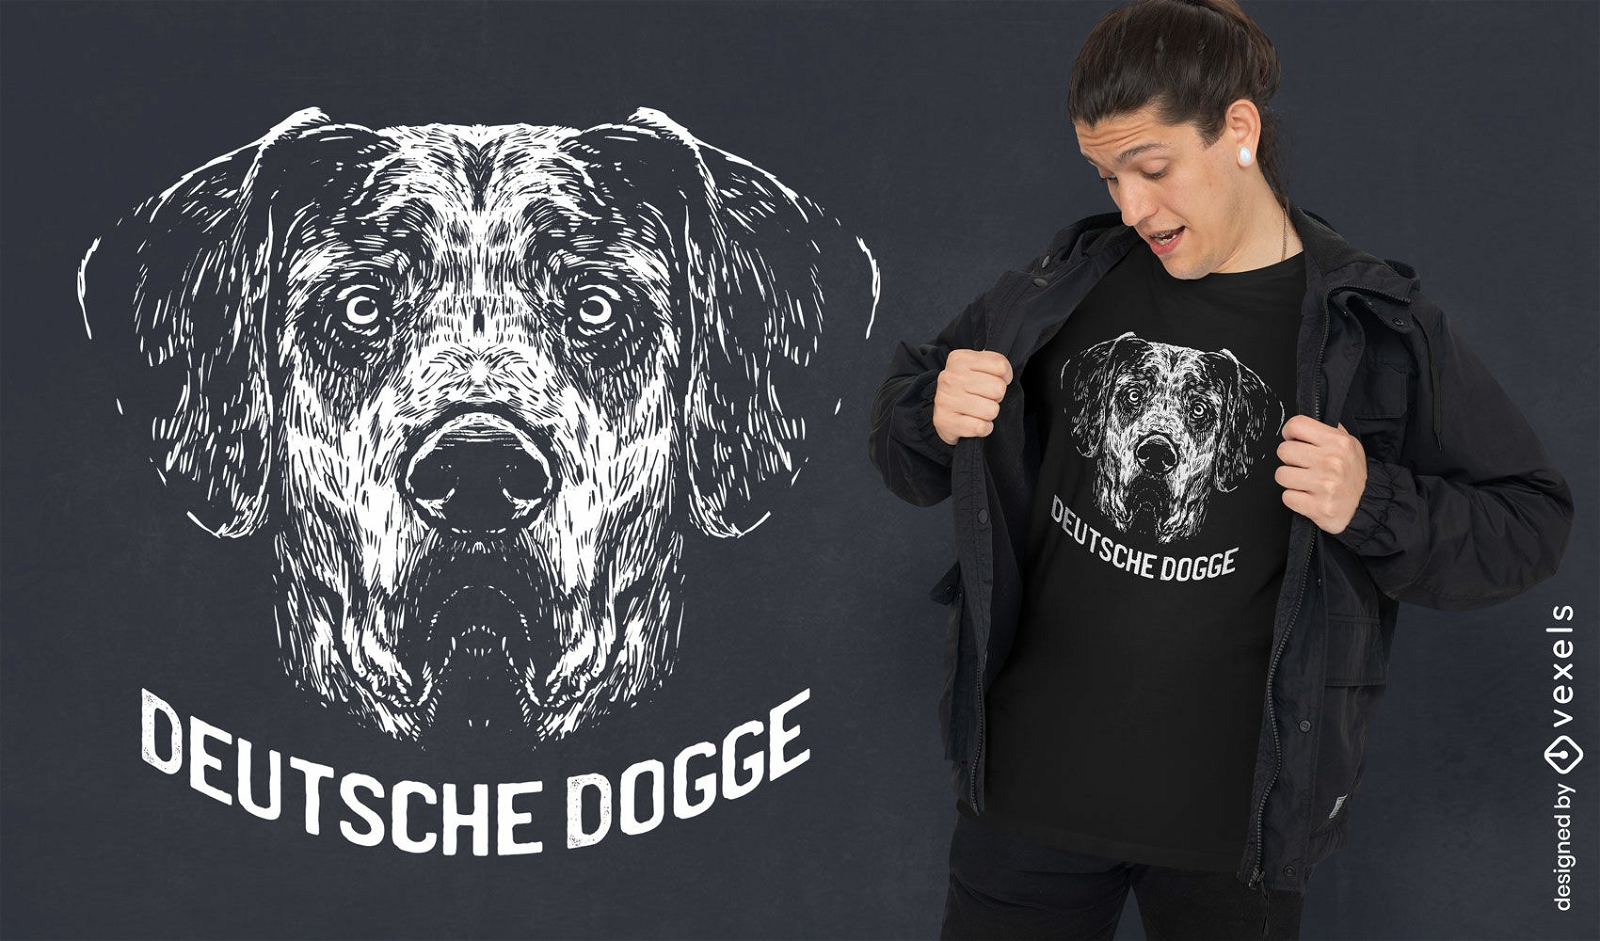 Deutsche dogge dog t-shirt design